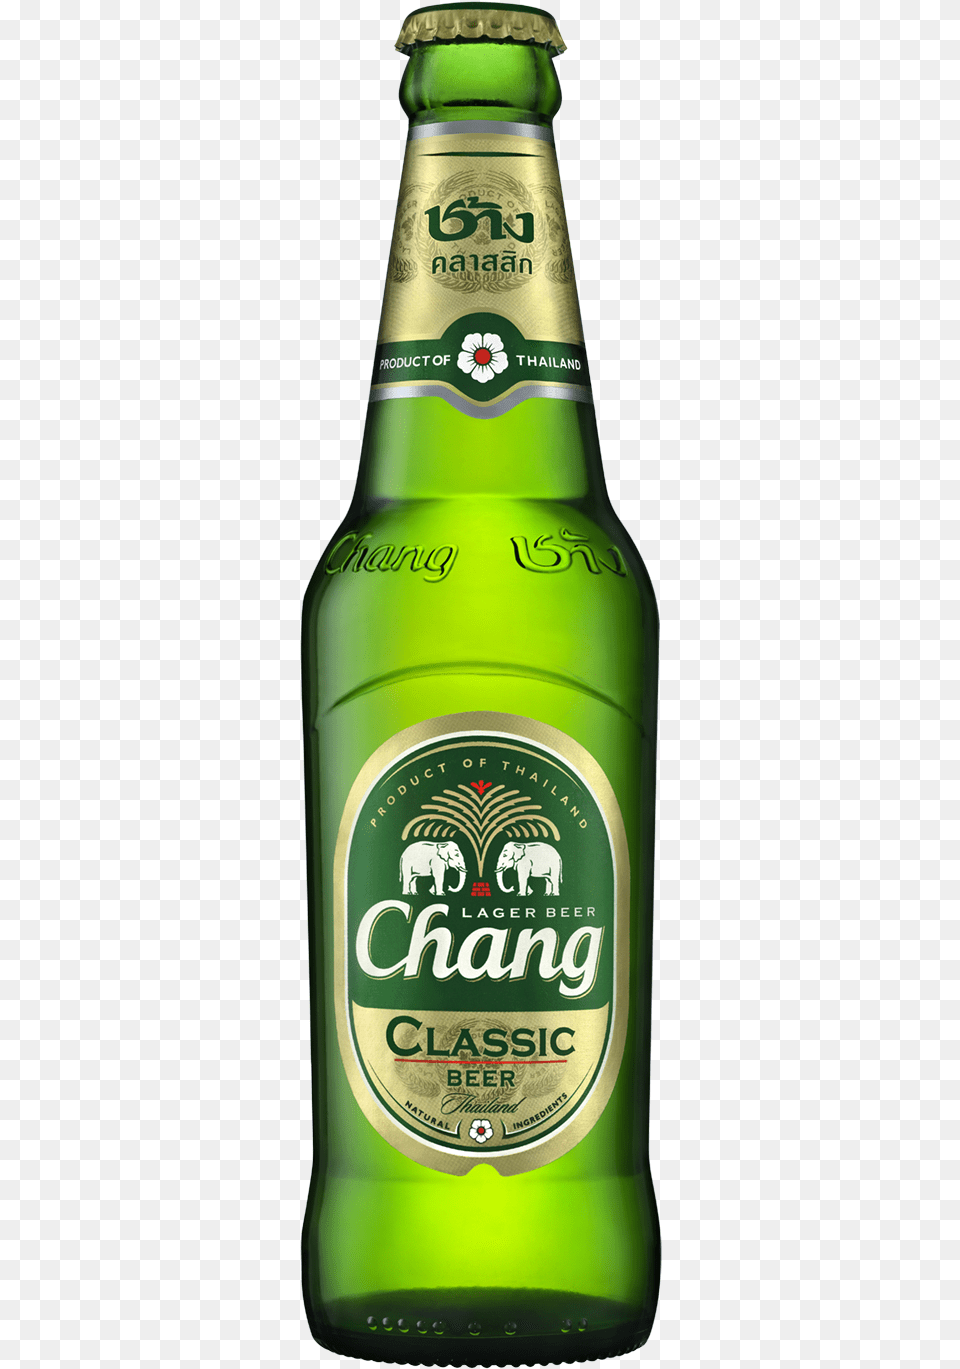 Beer Images Beer Pictures Download Chang Beer, Alcohol, Beer Bottle, Beverage, Bottle Free Png